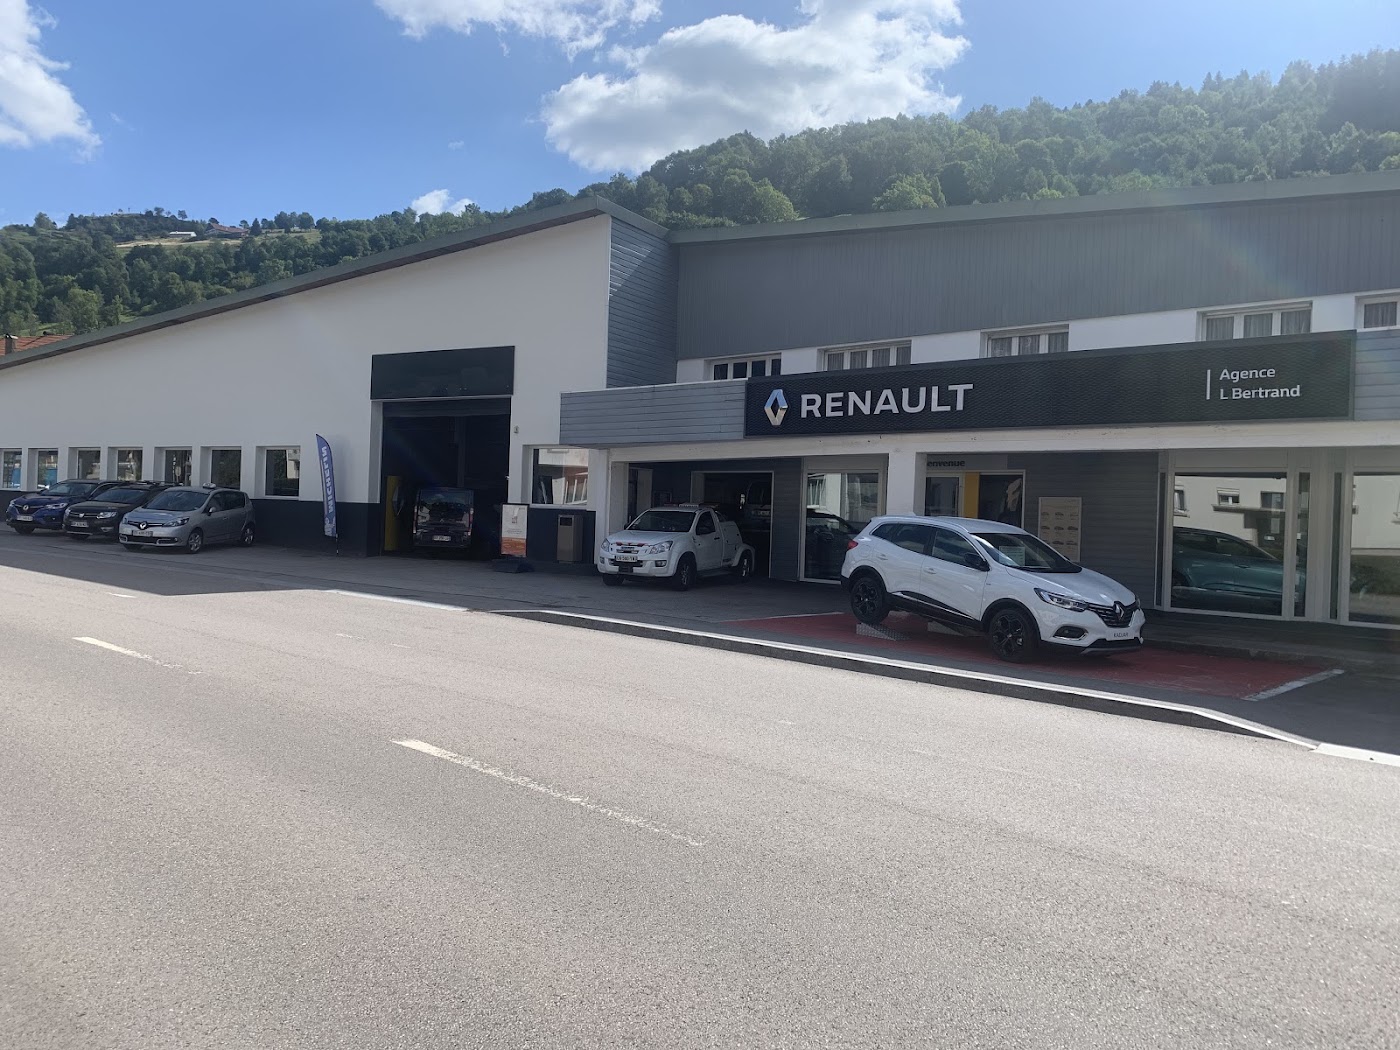 Garage Bertrand - Agent Renault Dacia